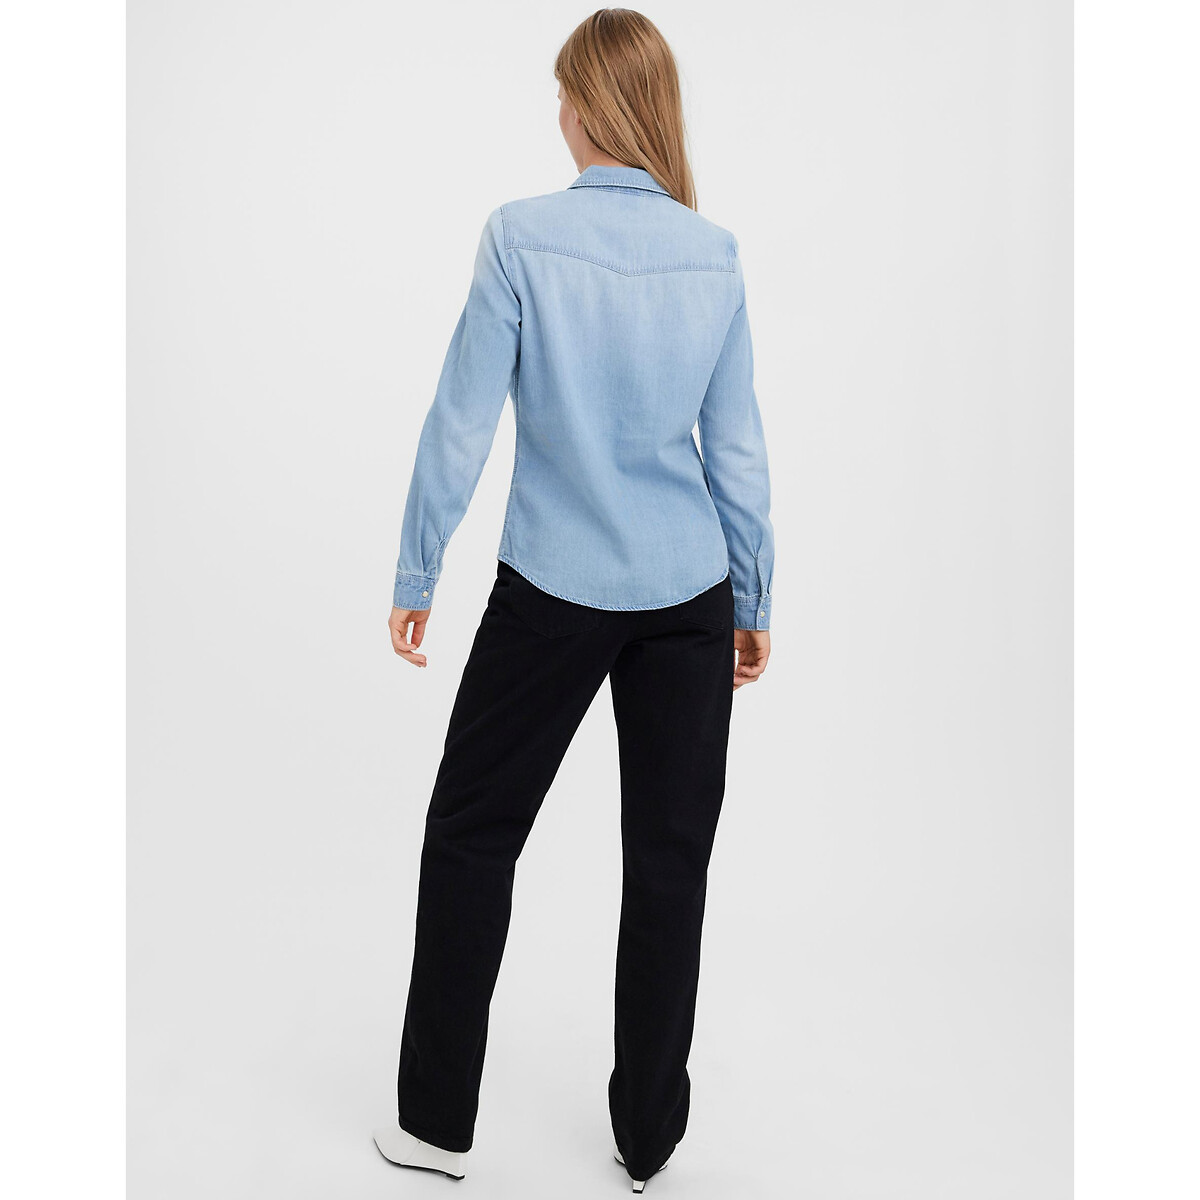 Рубашка Из джинсовой ткани S синий LaRedoute, размер S - фото 3